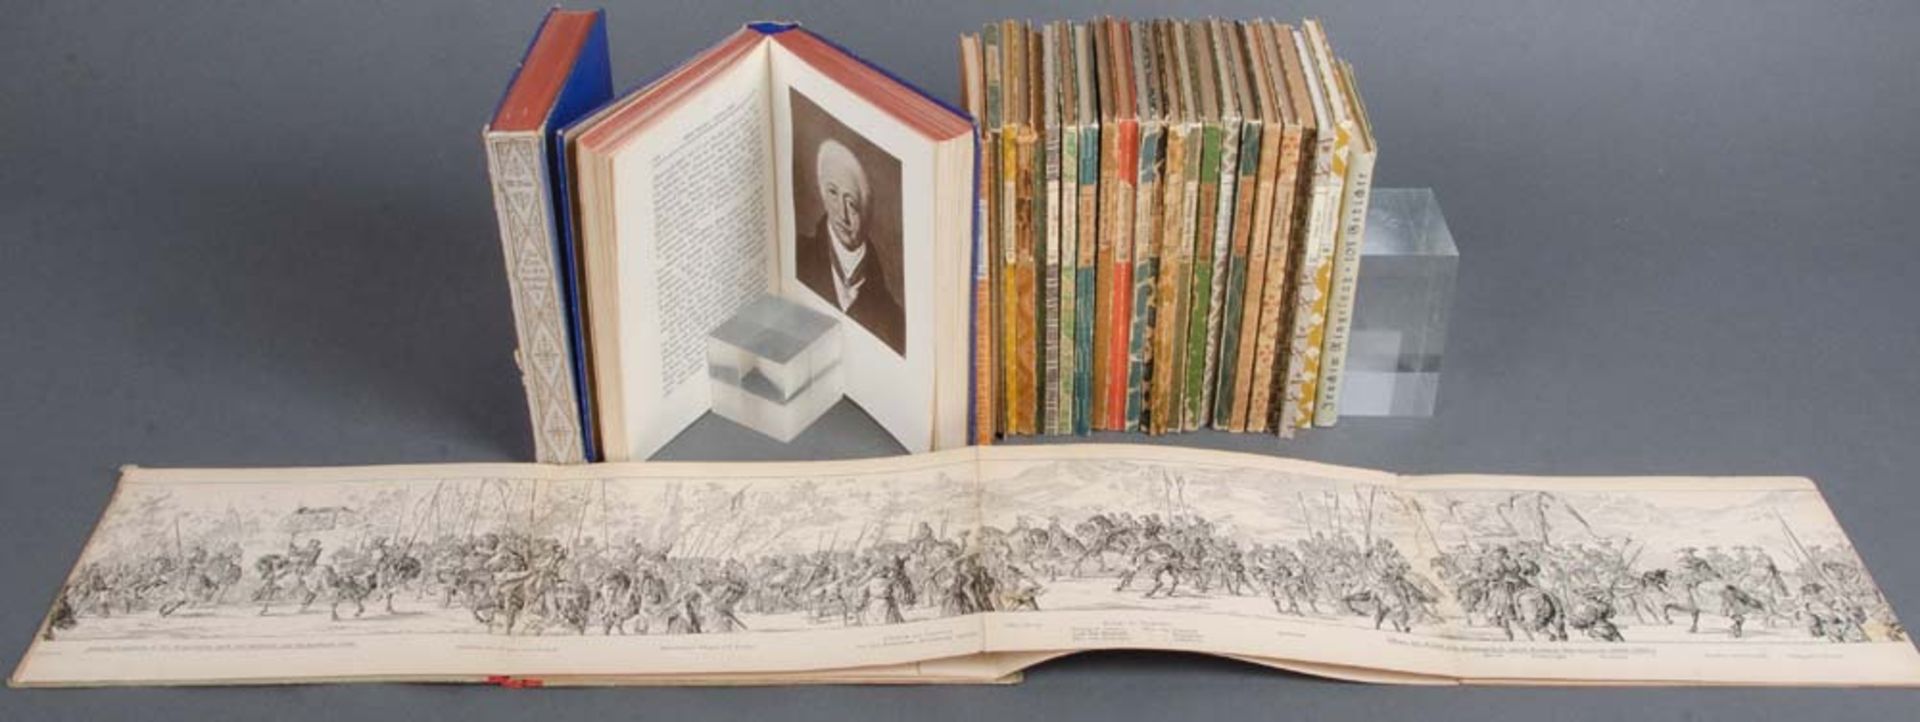 22 Bde. „Insel-Bücherei“, u.a. Griechische Lyrik, Chinesische Meisternovellen, Nebelthau, Rilke,